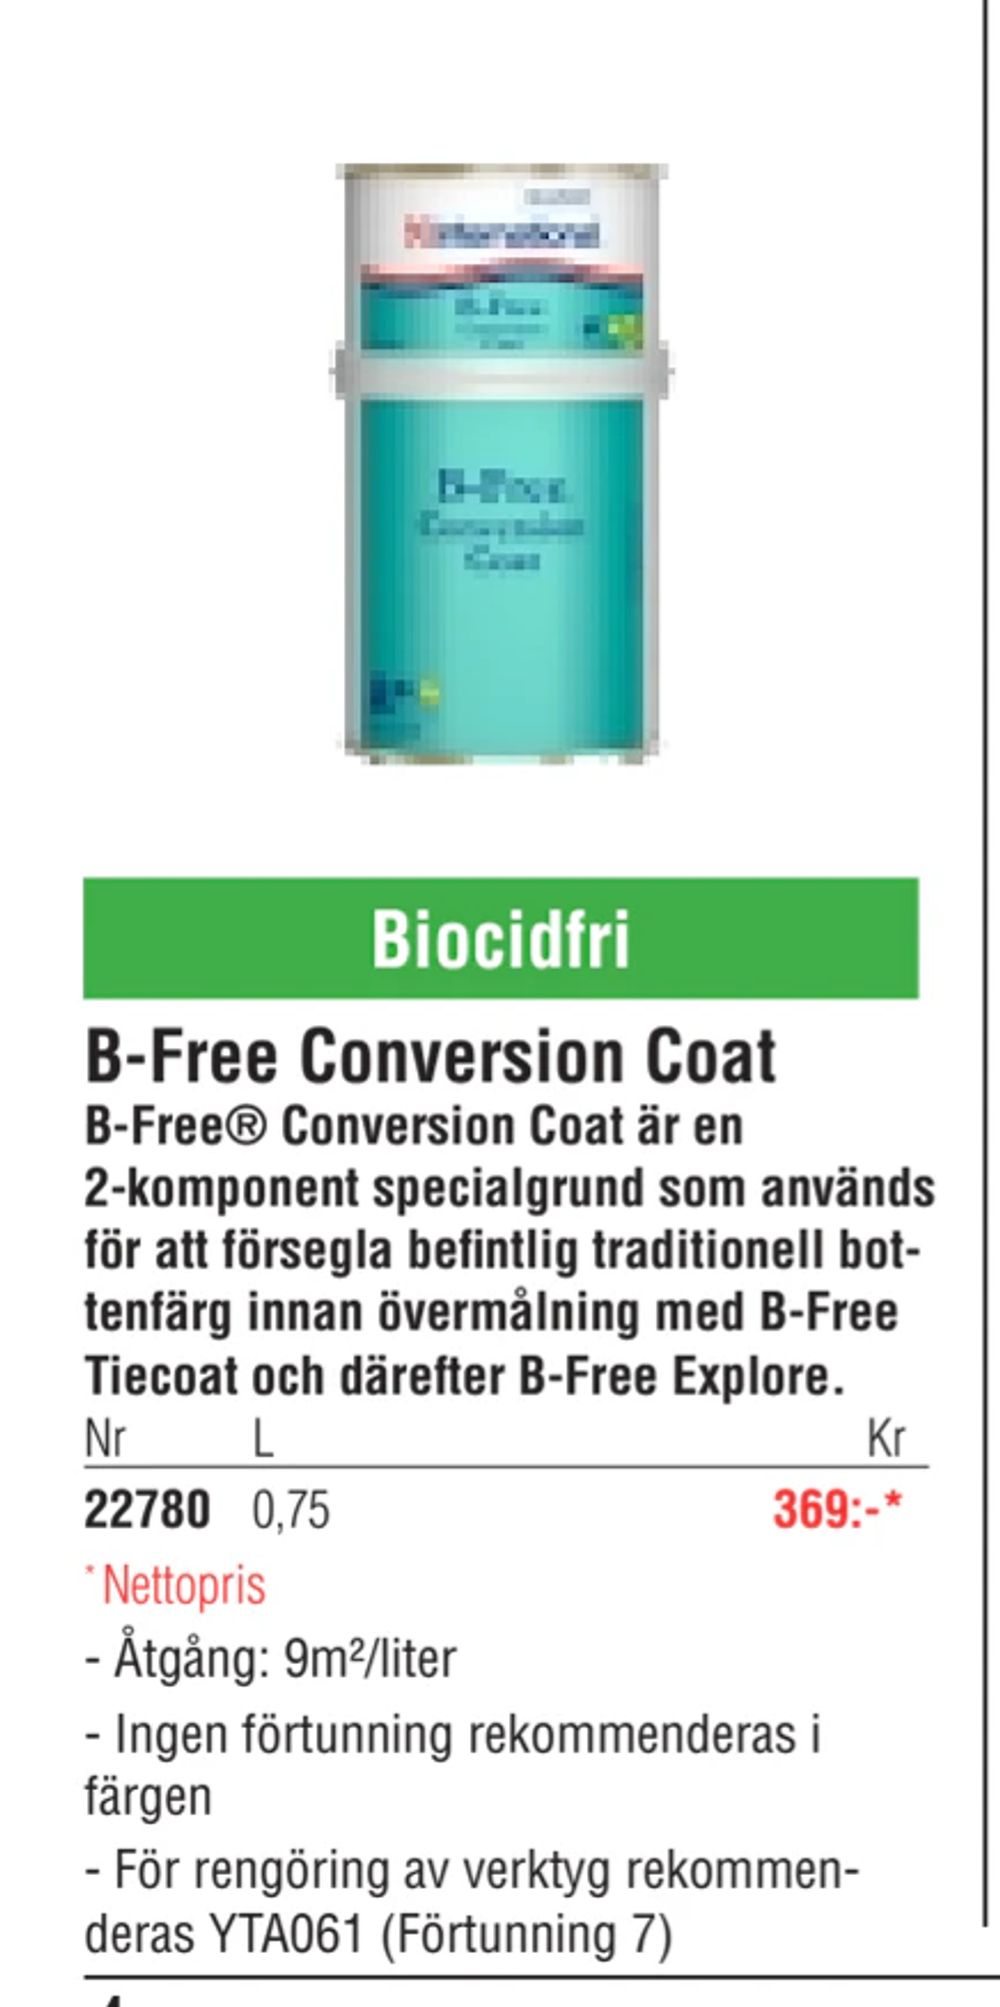 Erbjudanden på B-Free Conversion Coat från Erlandsons Brygga för 369 kr